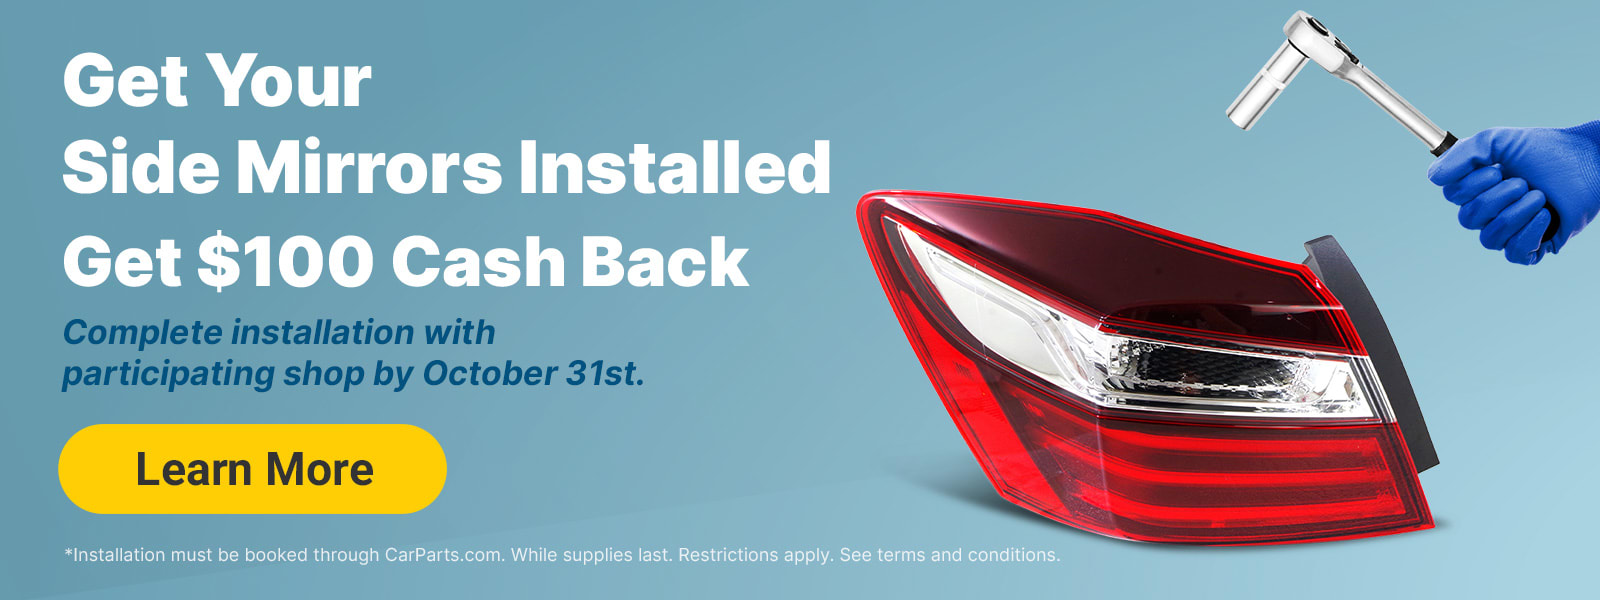 Get Your Tail Lights Installed. Get $100 Cash Back.